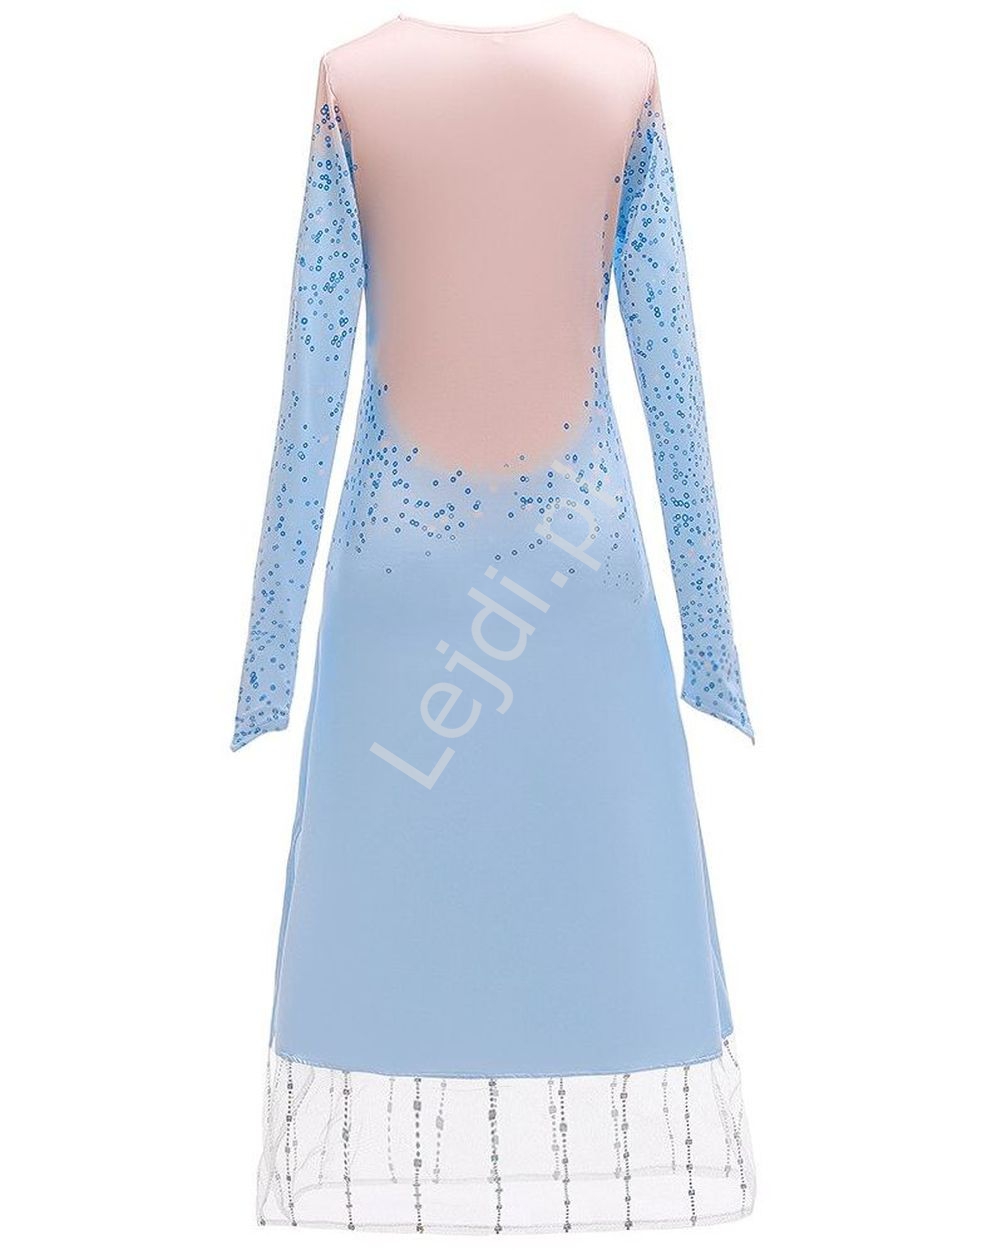 Kostium Frozen, 3 częściowy strój karnawałowy Elsa z Krainy Lodu